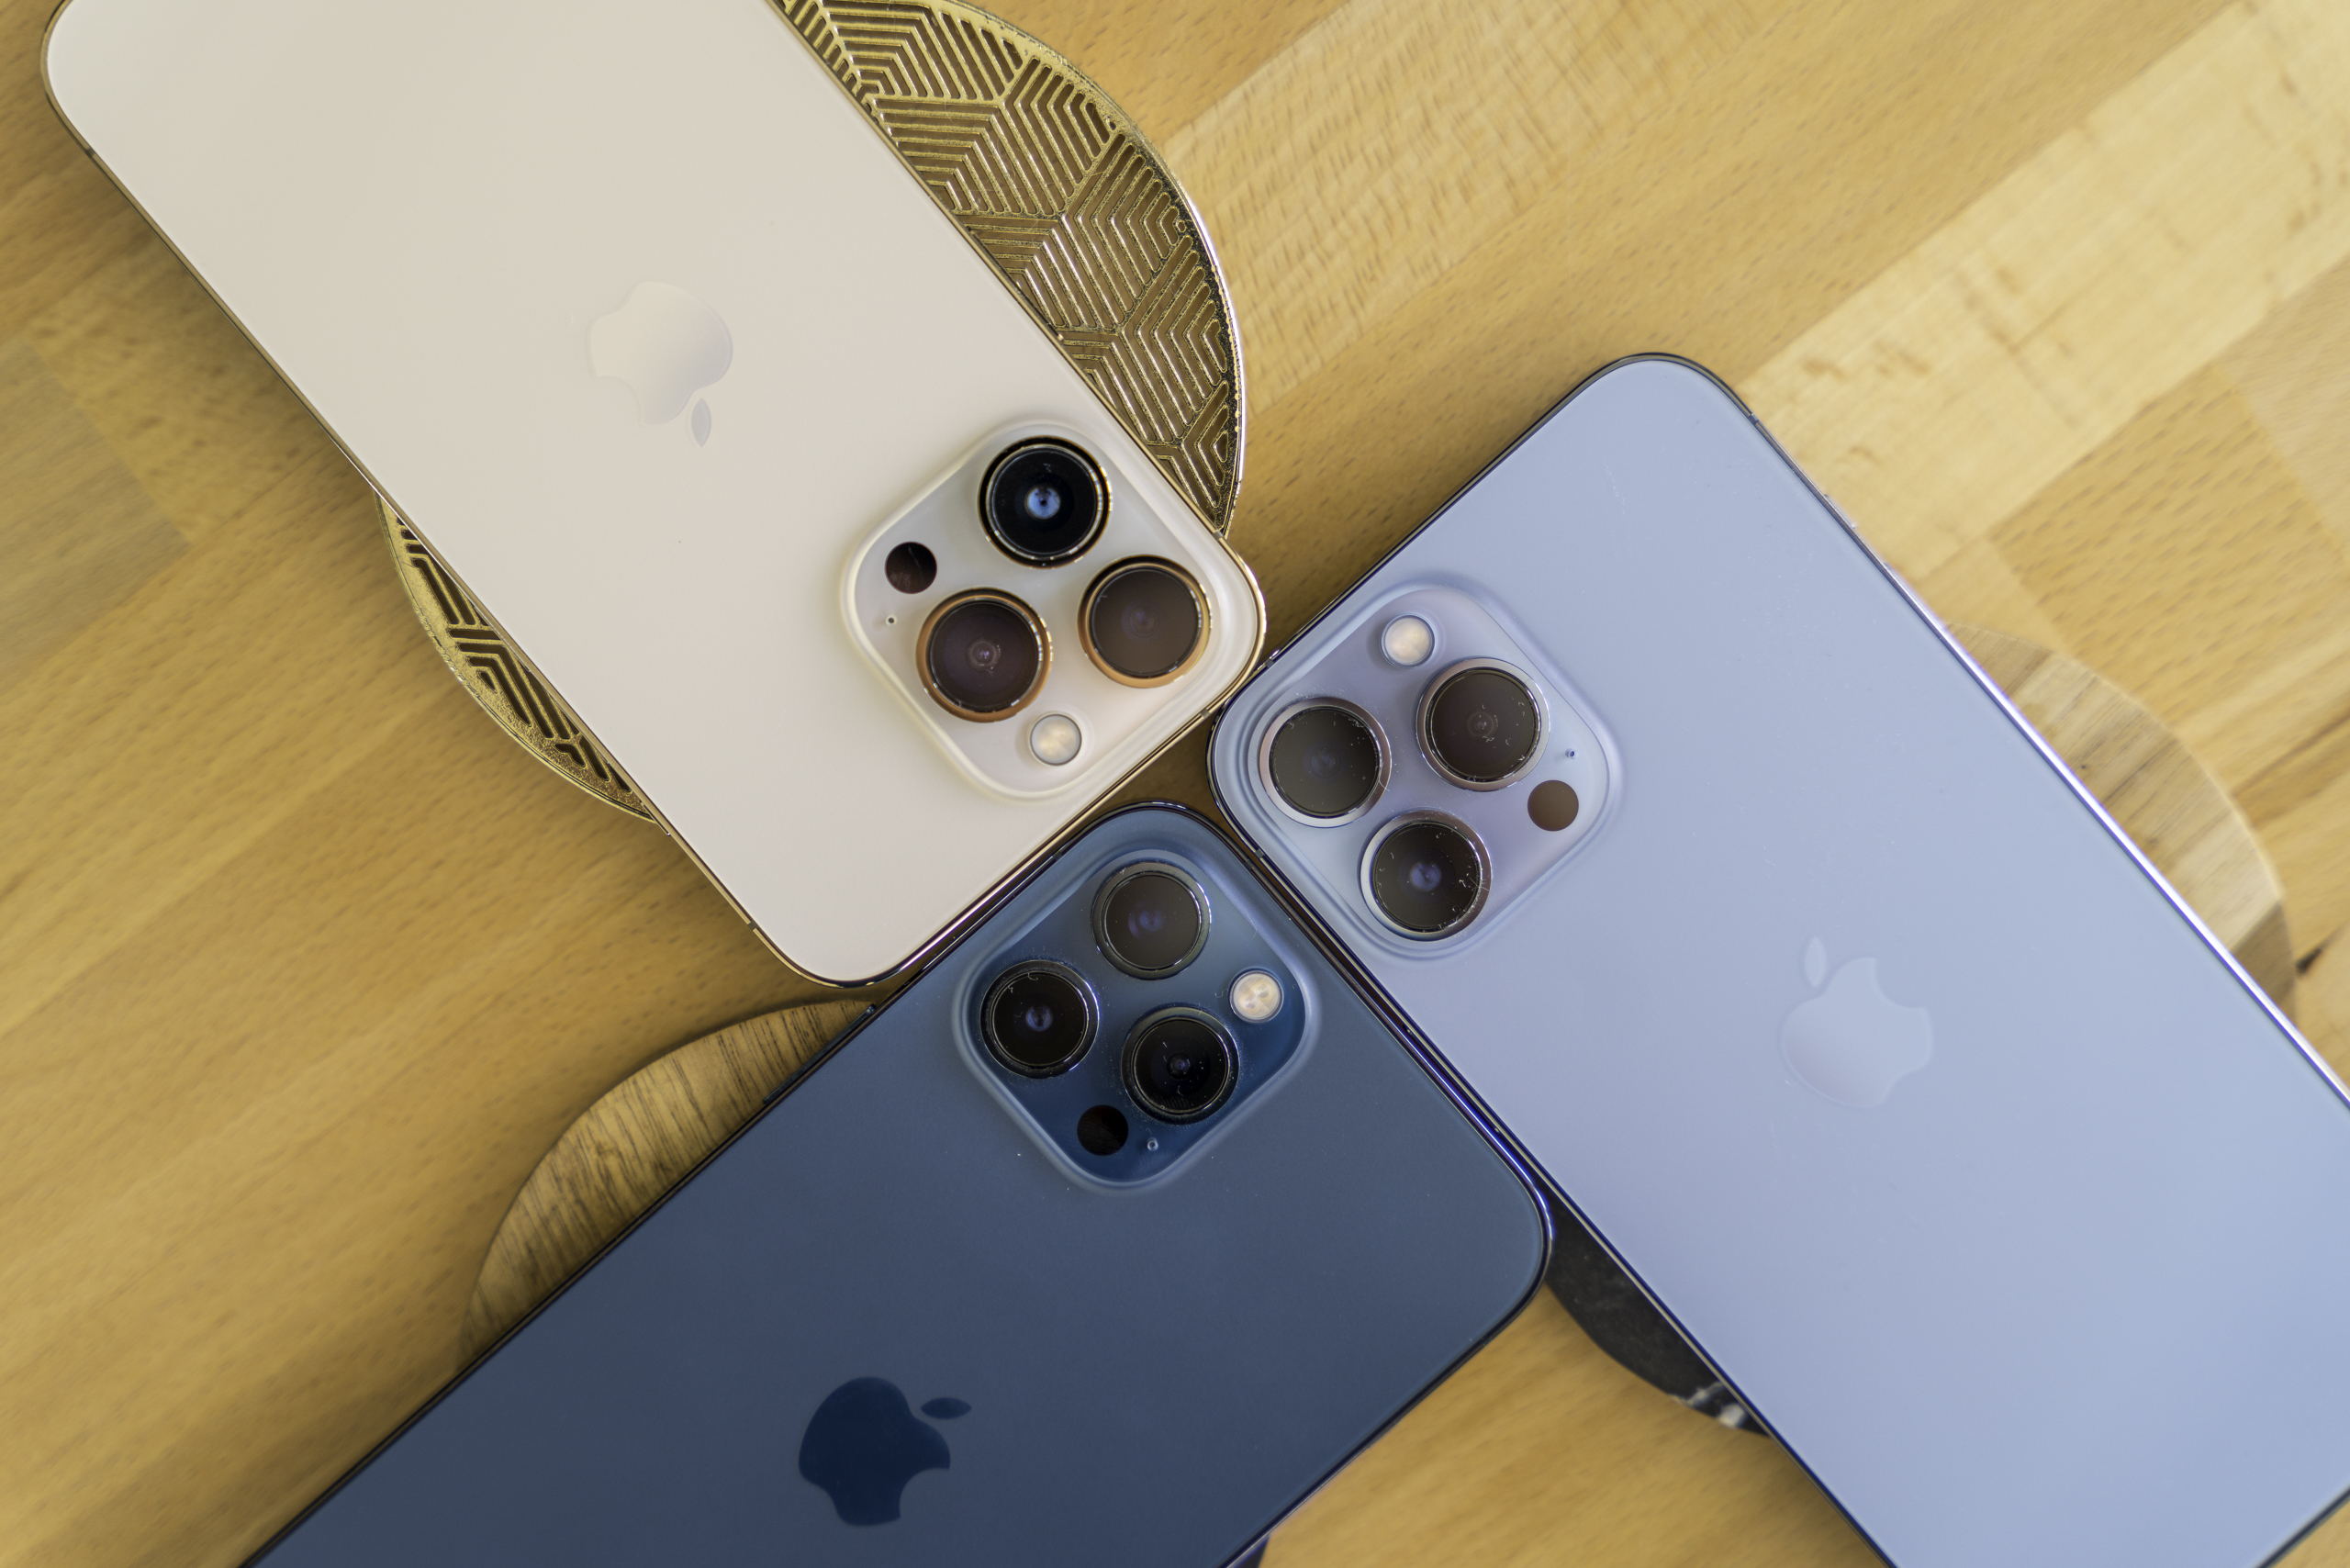 iPhone : Apple n'utilisera plus que ses propres puces 5G à partir de 2023